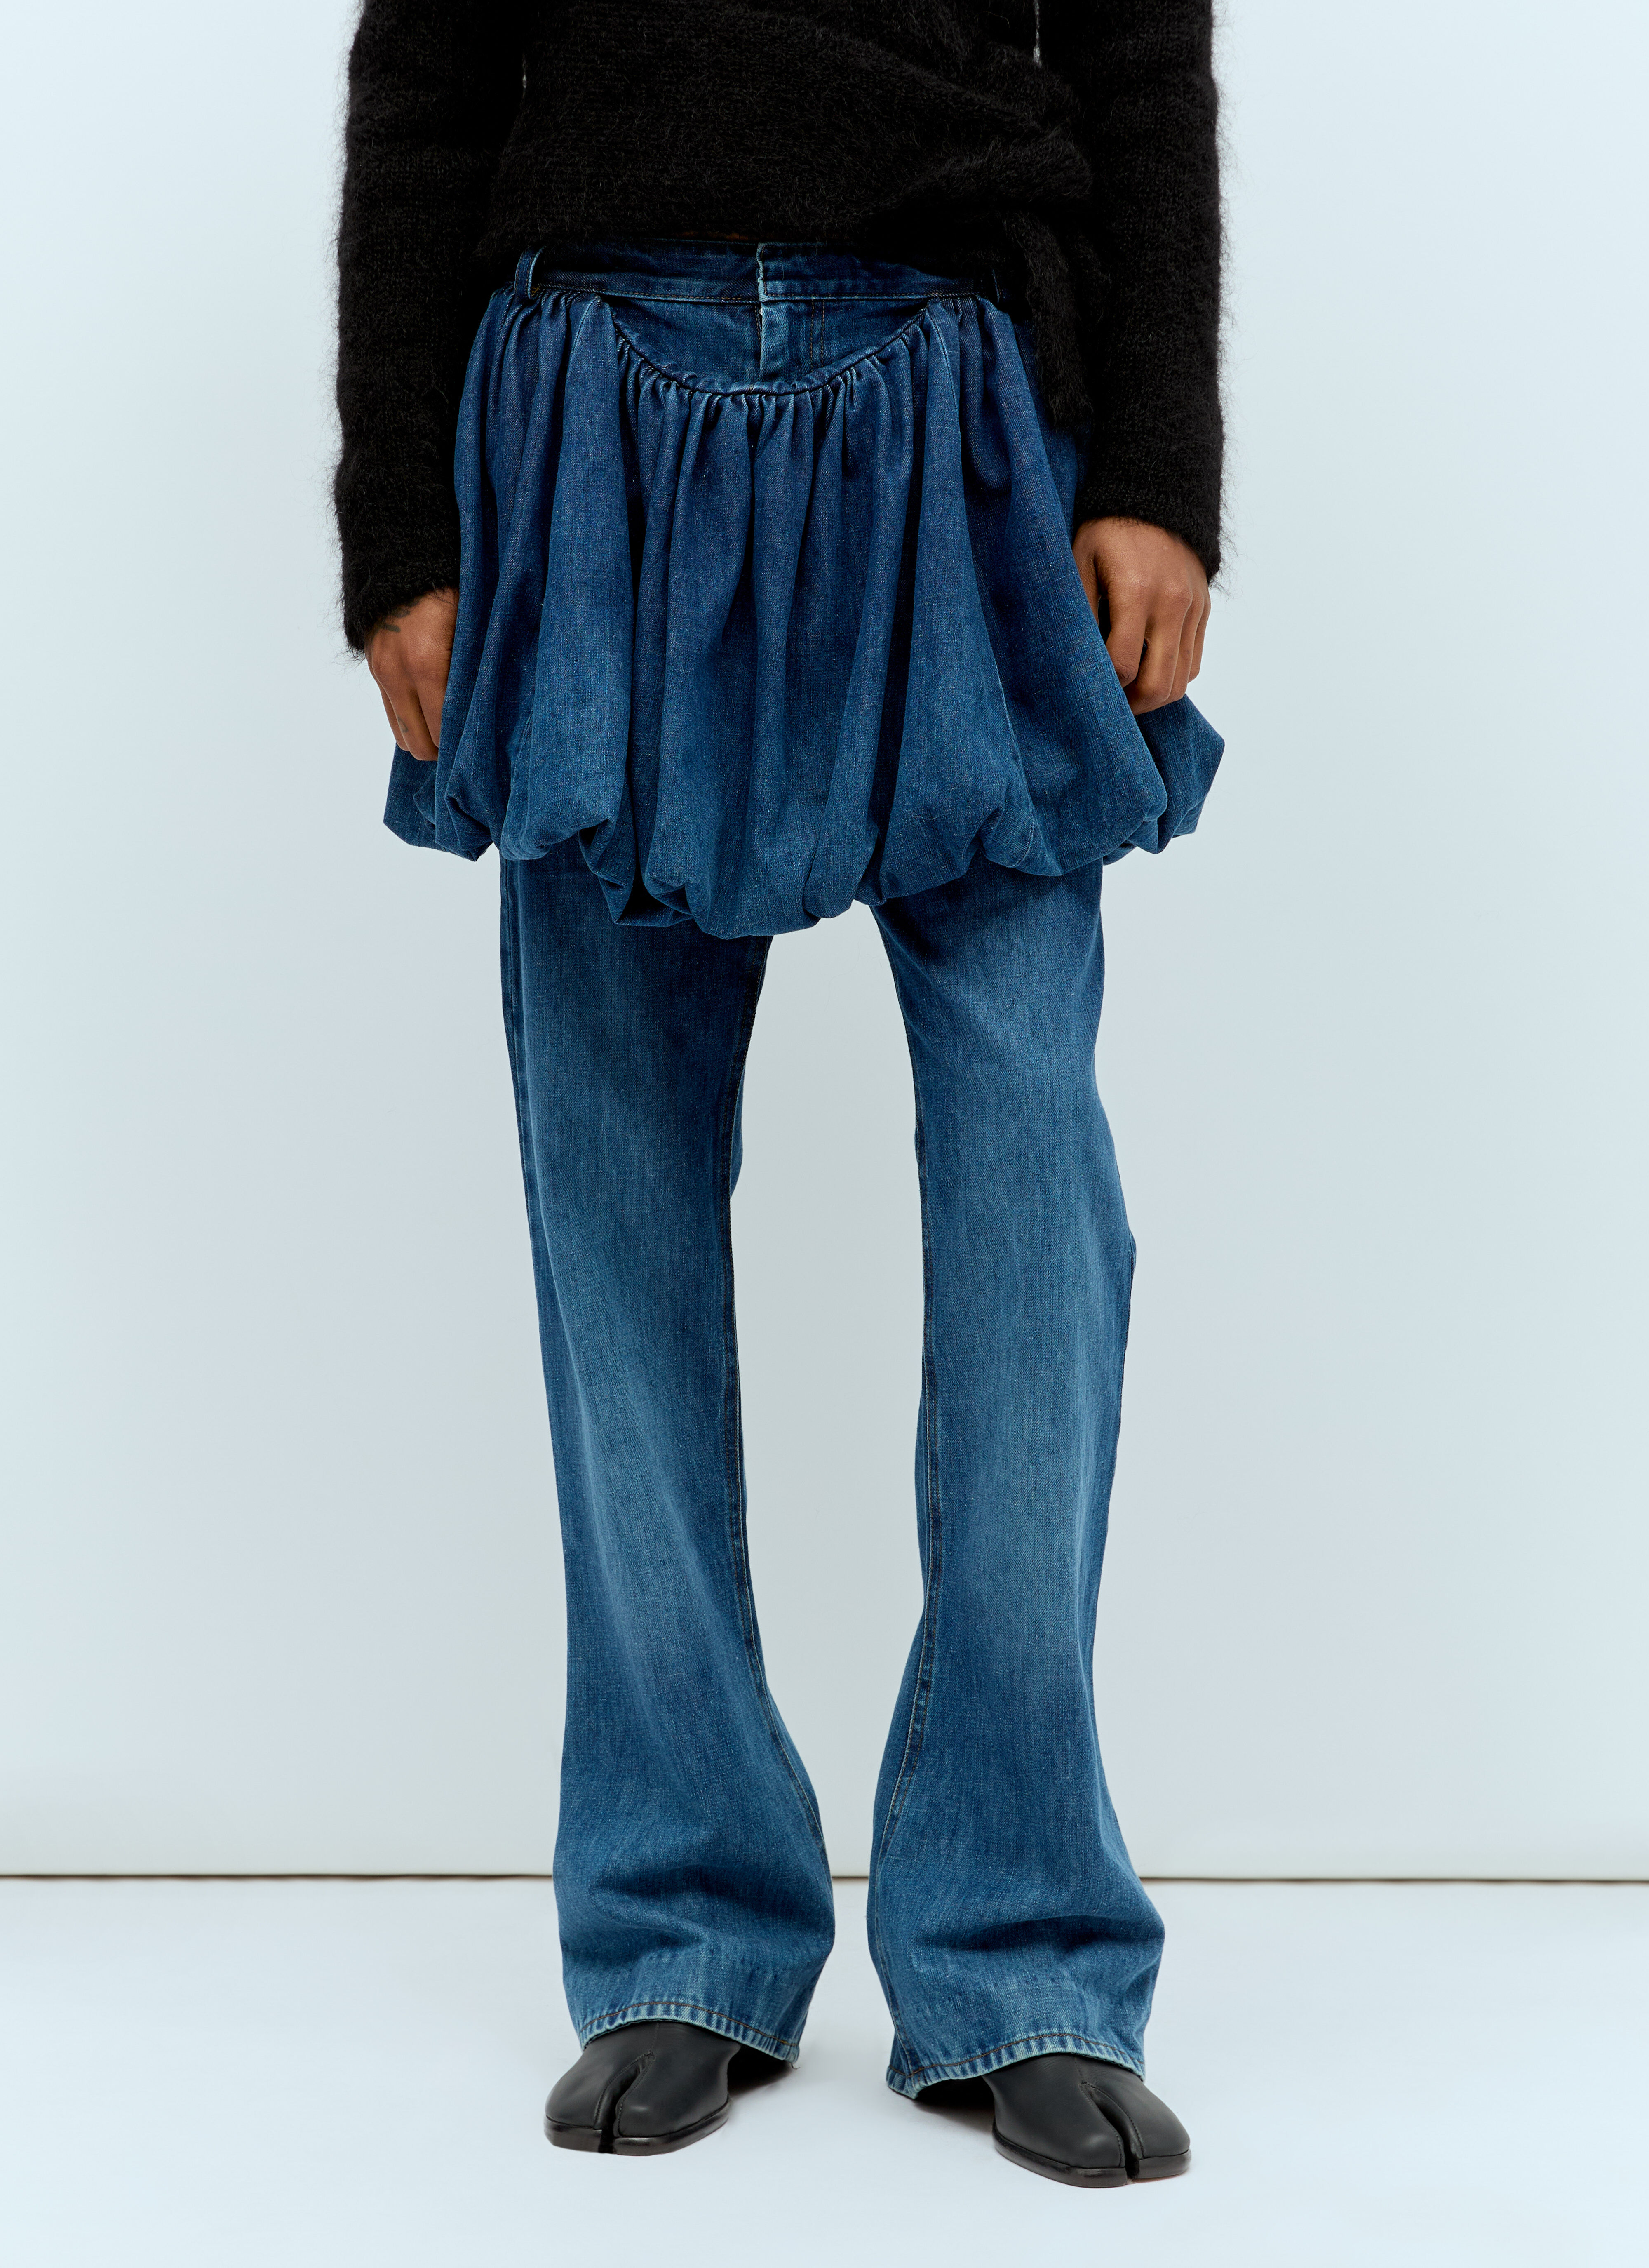 Yohji Yamamoto Puff Skirt Jeans Black yoy0156005